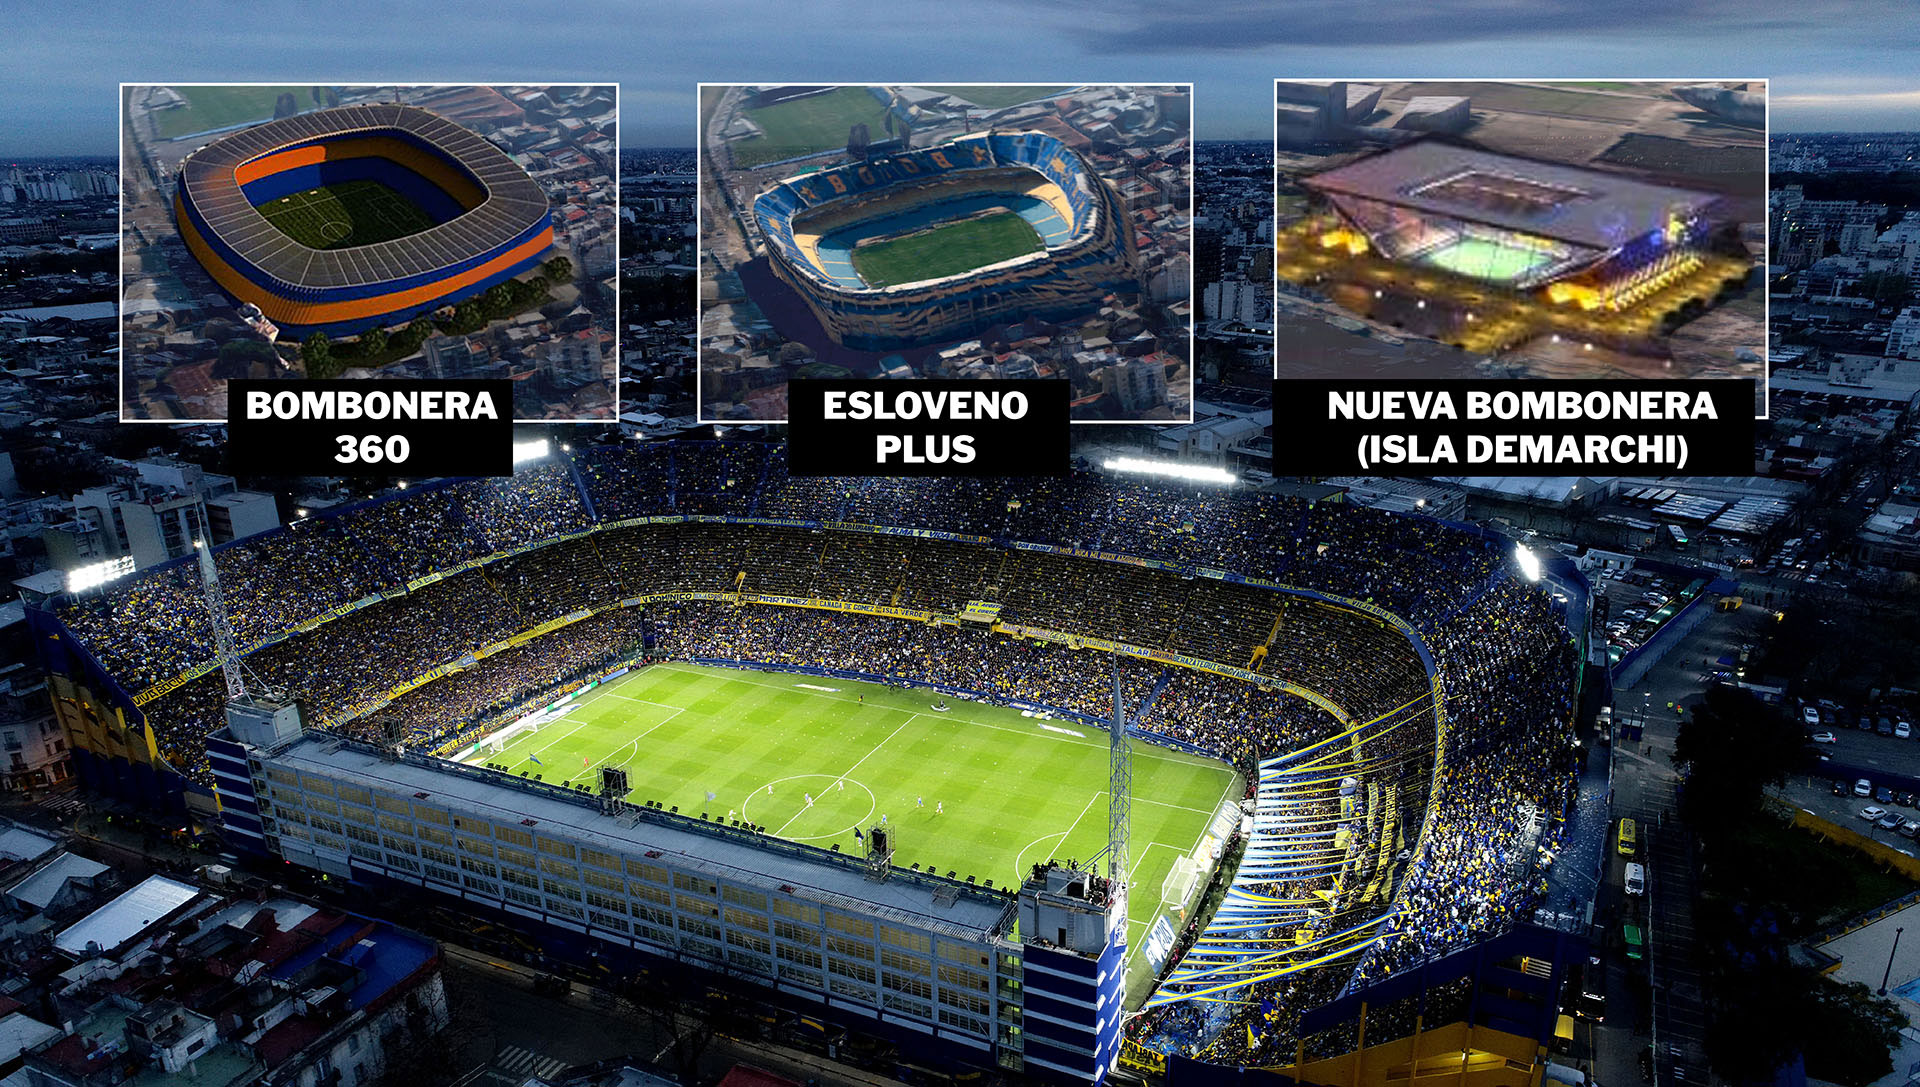 ¿Qué opinan los hinchas de Boca Juniors sobre la ampliación de la Bombonera?